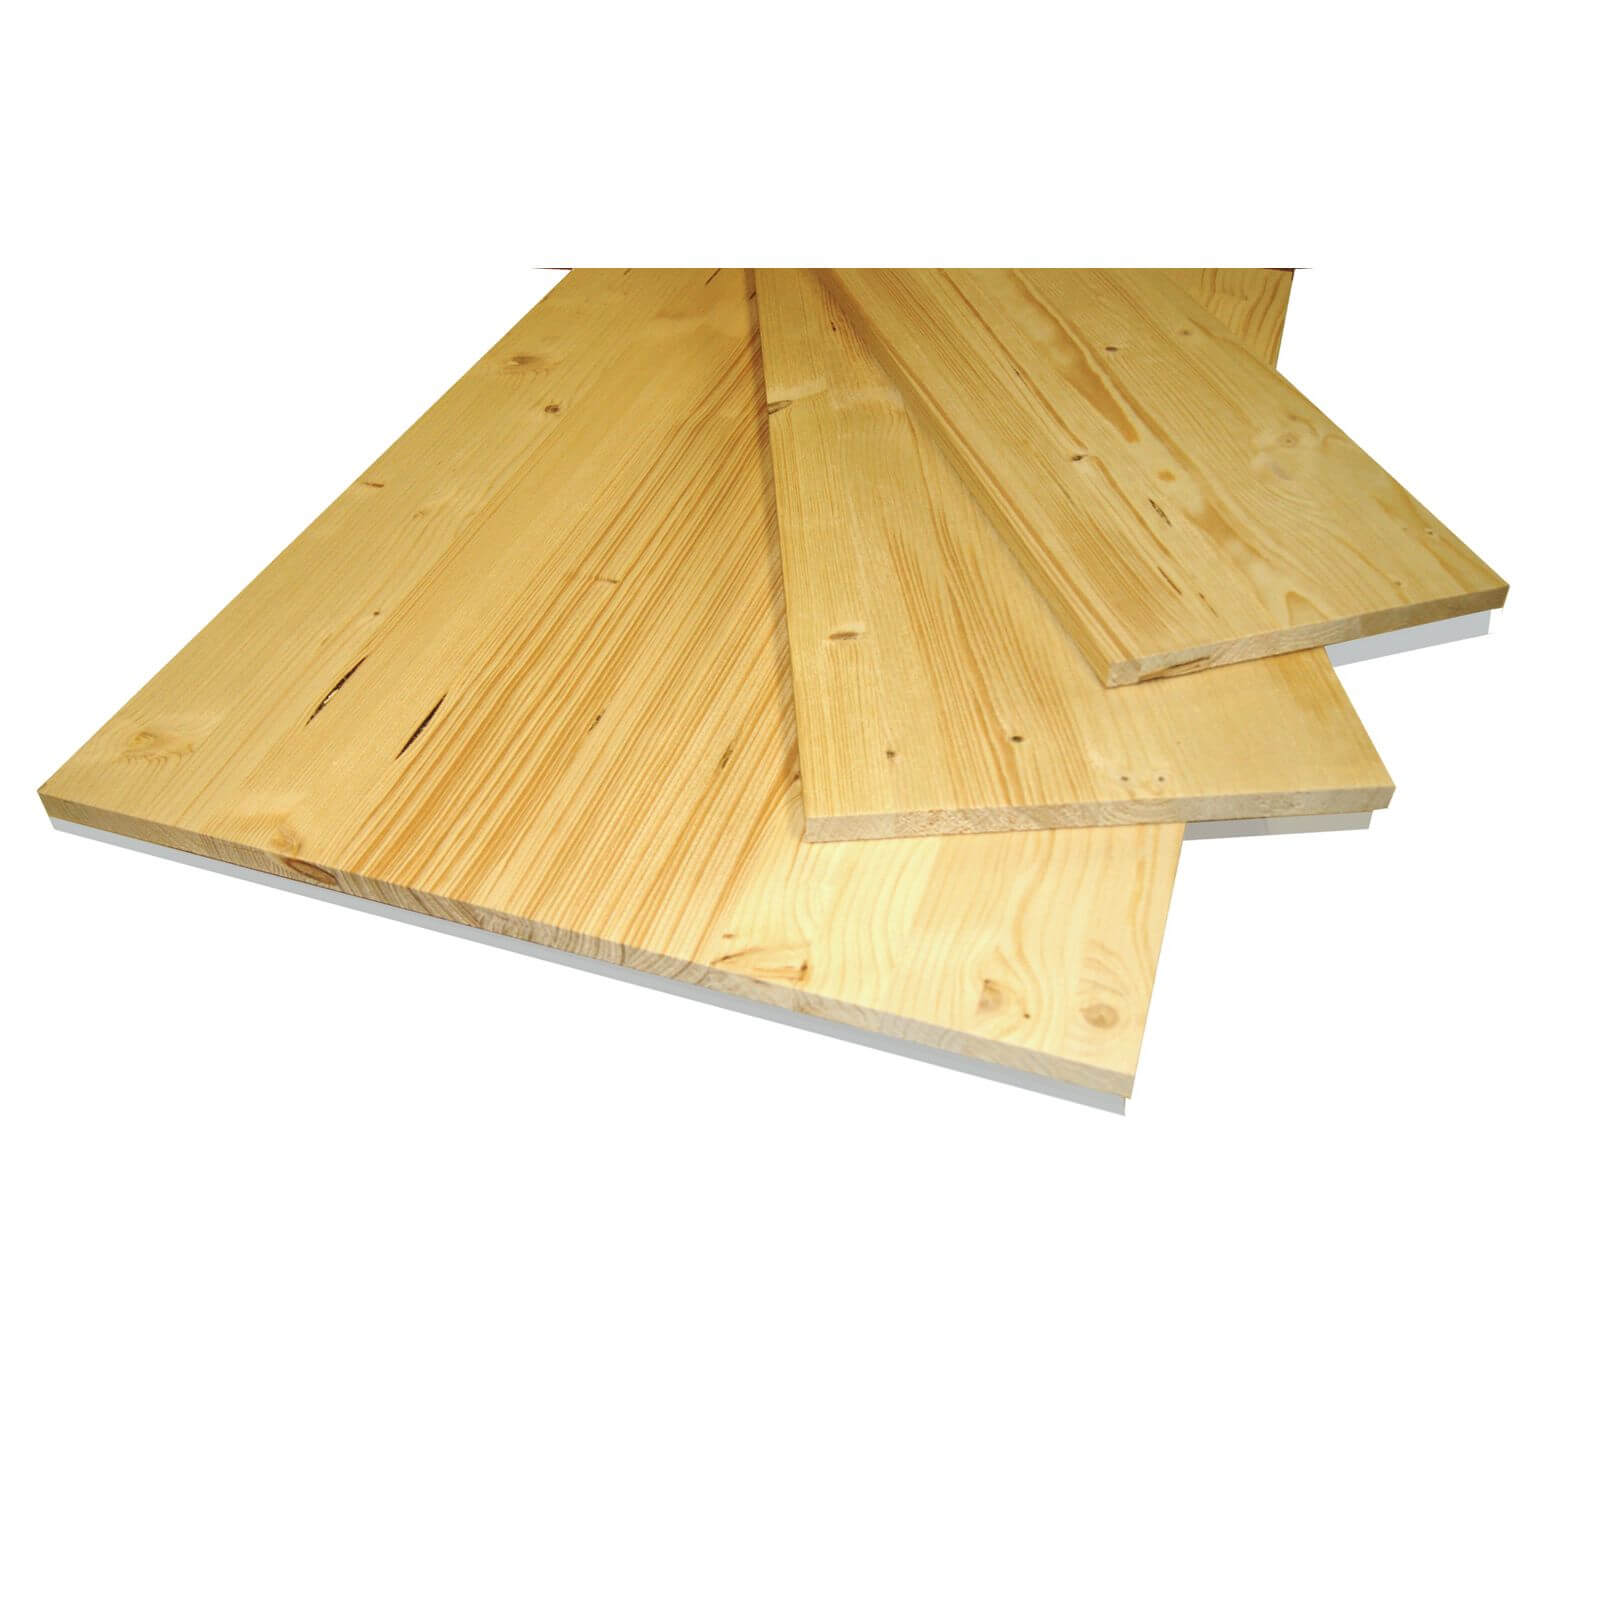 Metsa Wood Solid Spruce Wooden Panel Board 2.35m (18 x 200 x 2350mm)